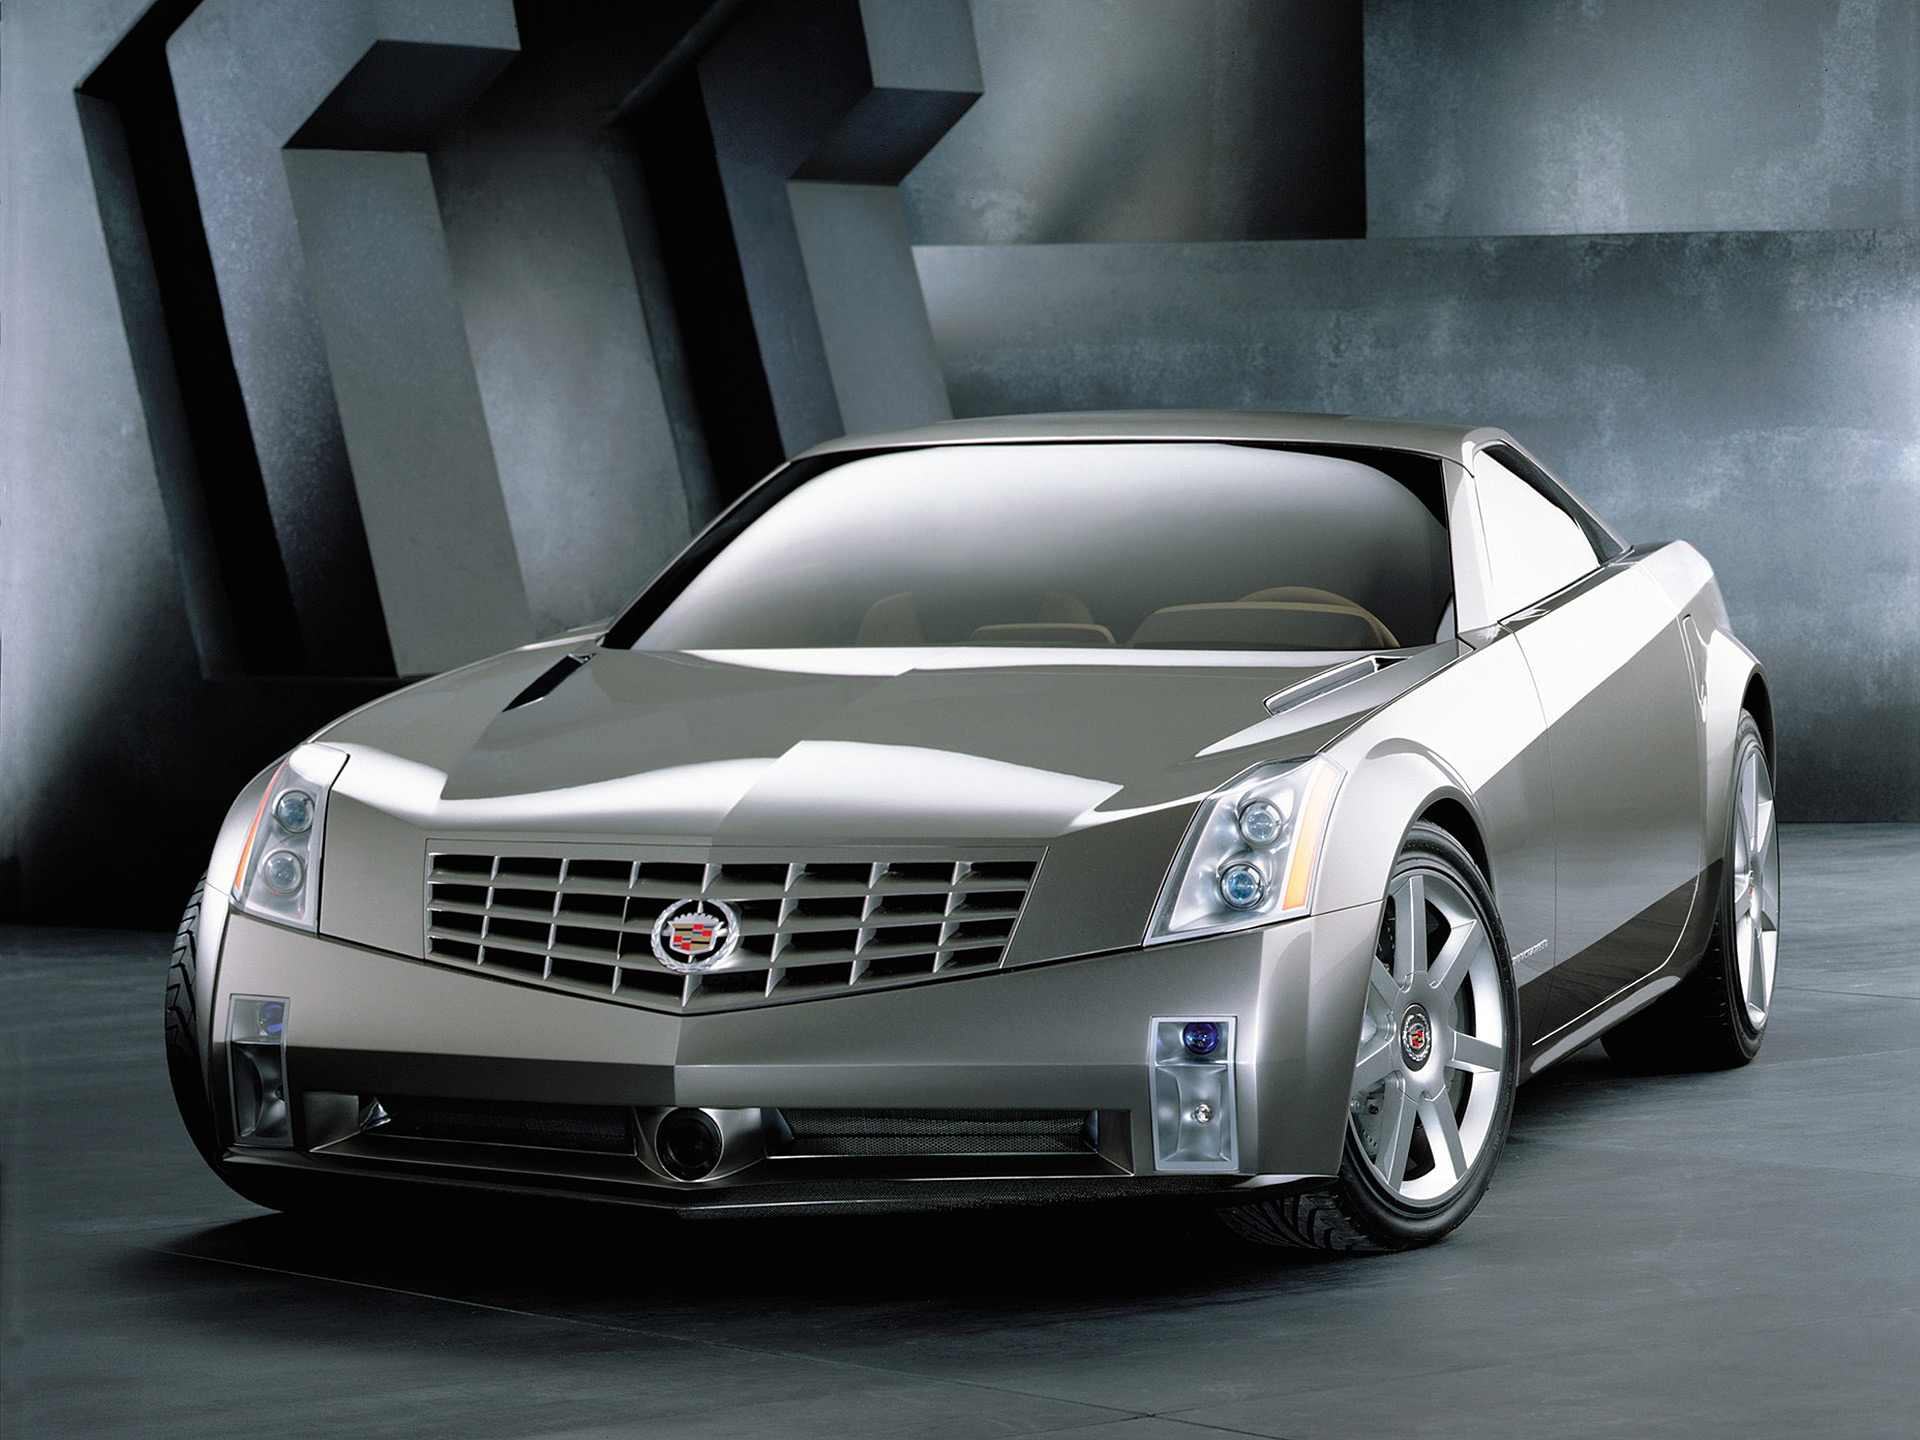 Descarga gratuita de fondo de pantalla para móvil de Cadillac, Coche, Auto Concepto, Vehículos, Coche De Plata, Coupé, Concepto Cadillac Evoq, Cadillac Evoq.